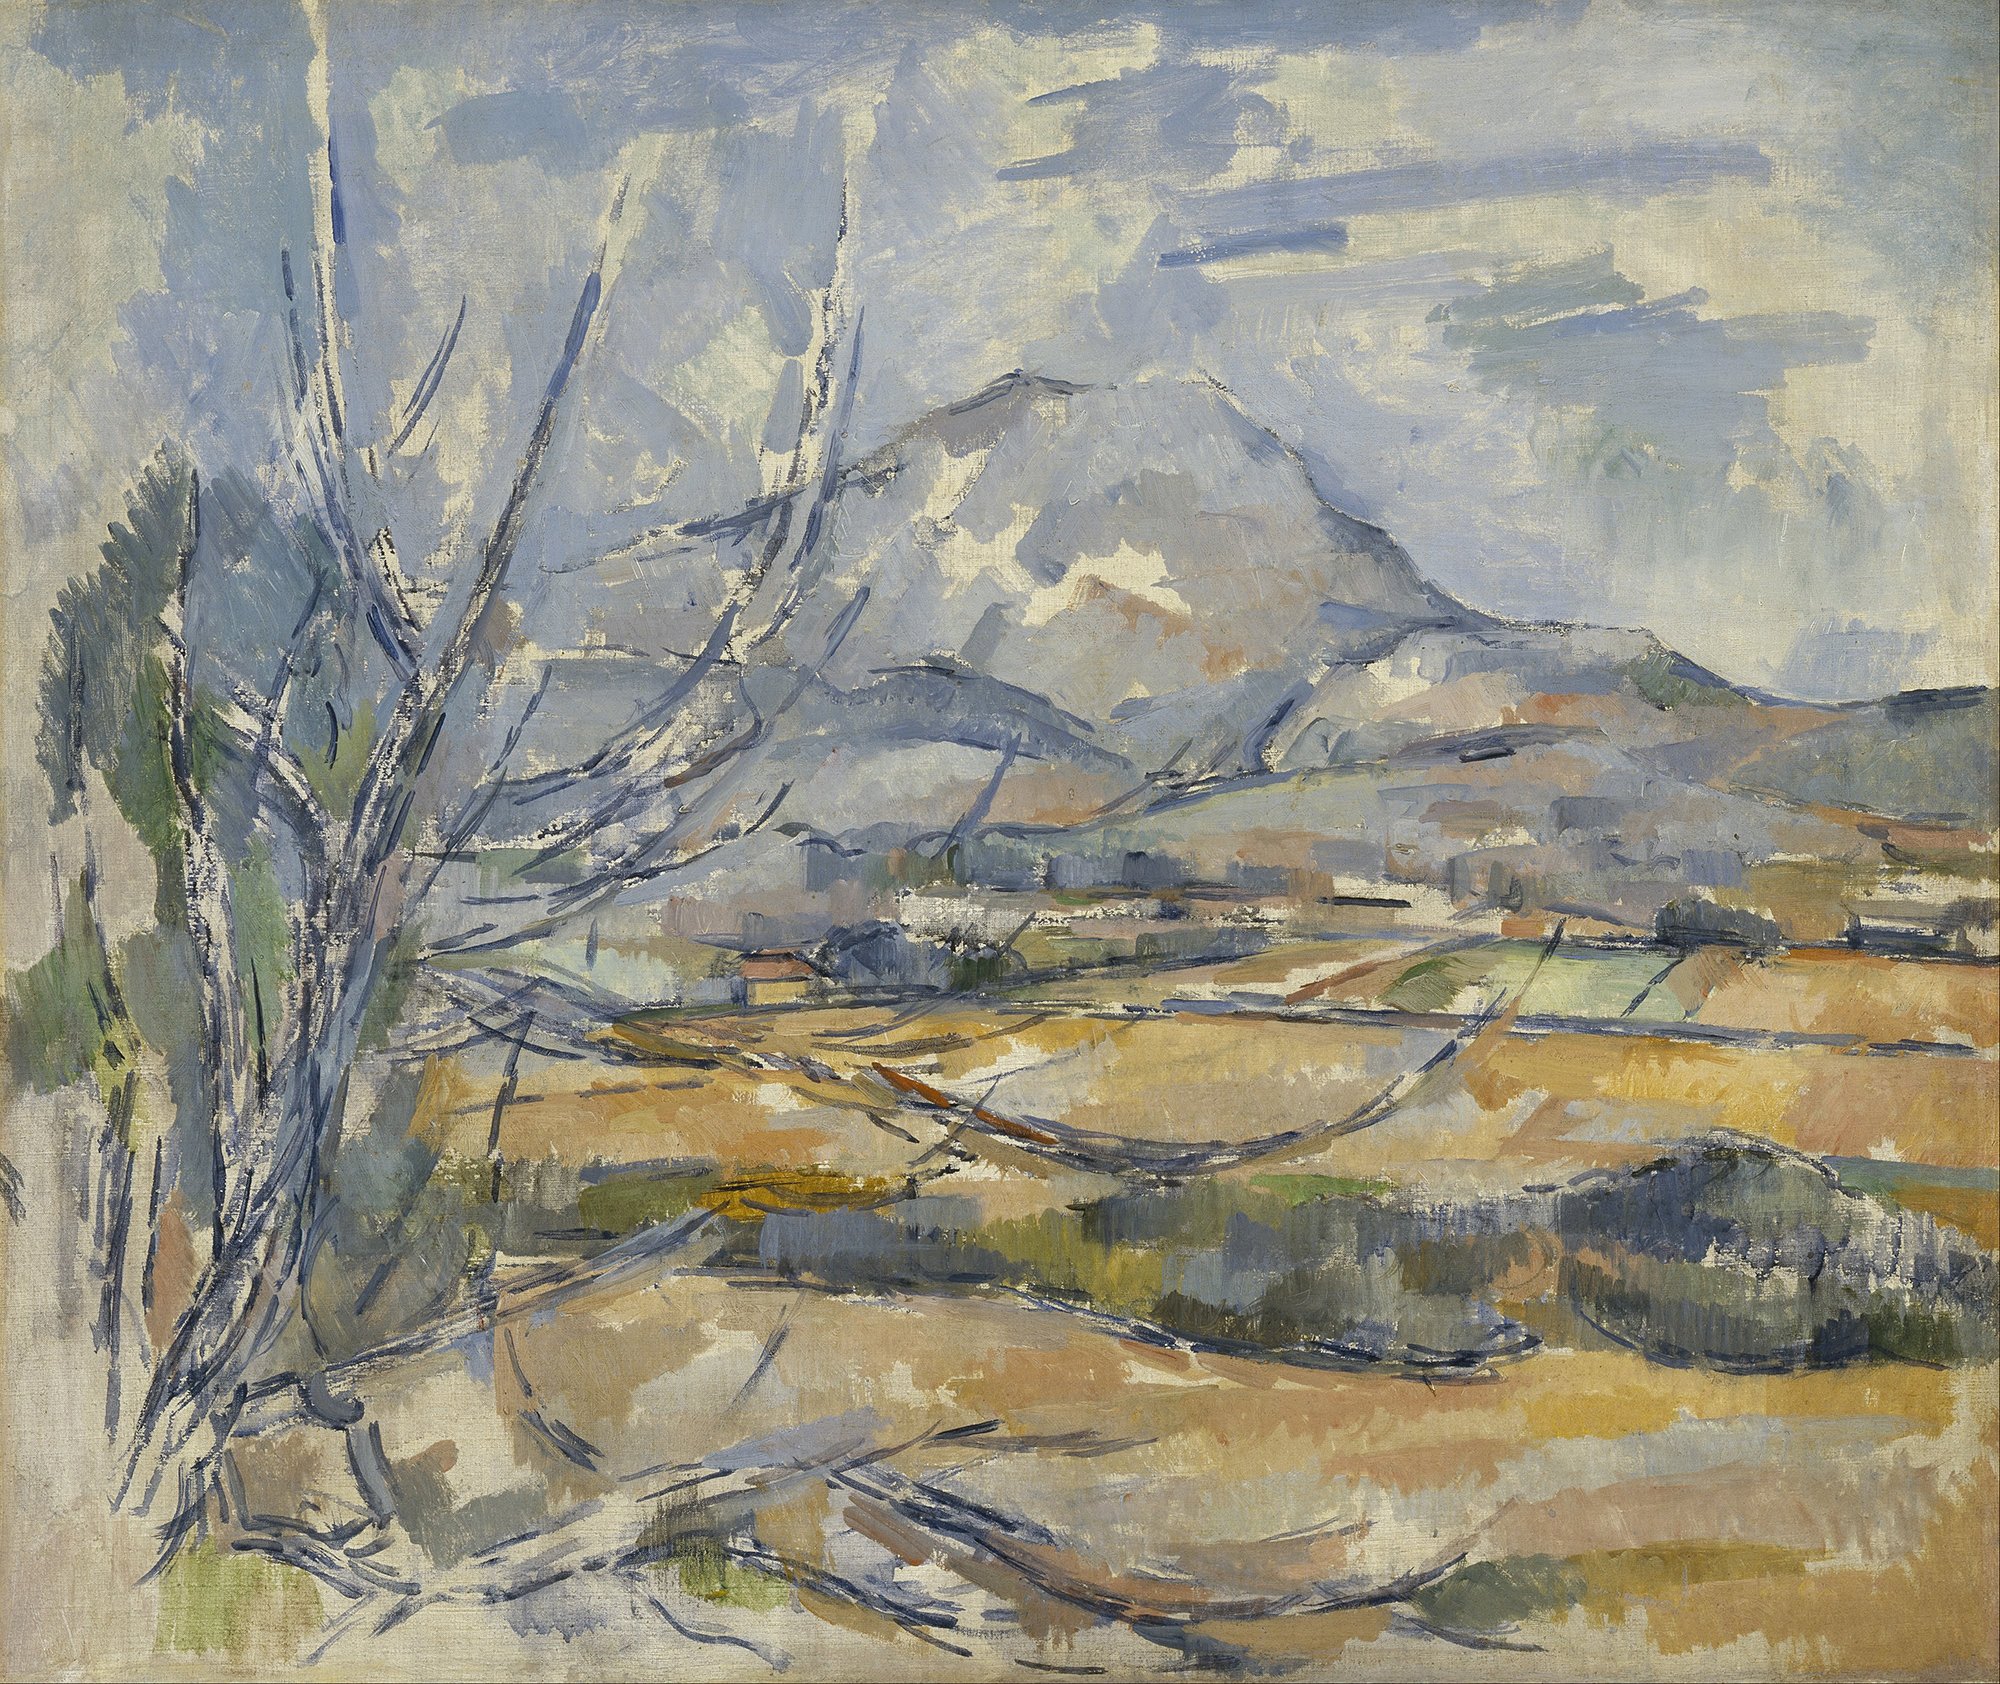 Cézannes Gemälde "Montagne Sainte-Victoire": Im Vordergrund sieht man eine Landschaft und im Hintergrund einen Berg. Die Farbgebung ist blau und beige.